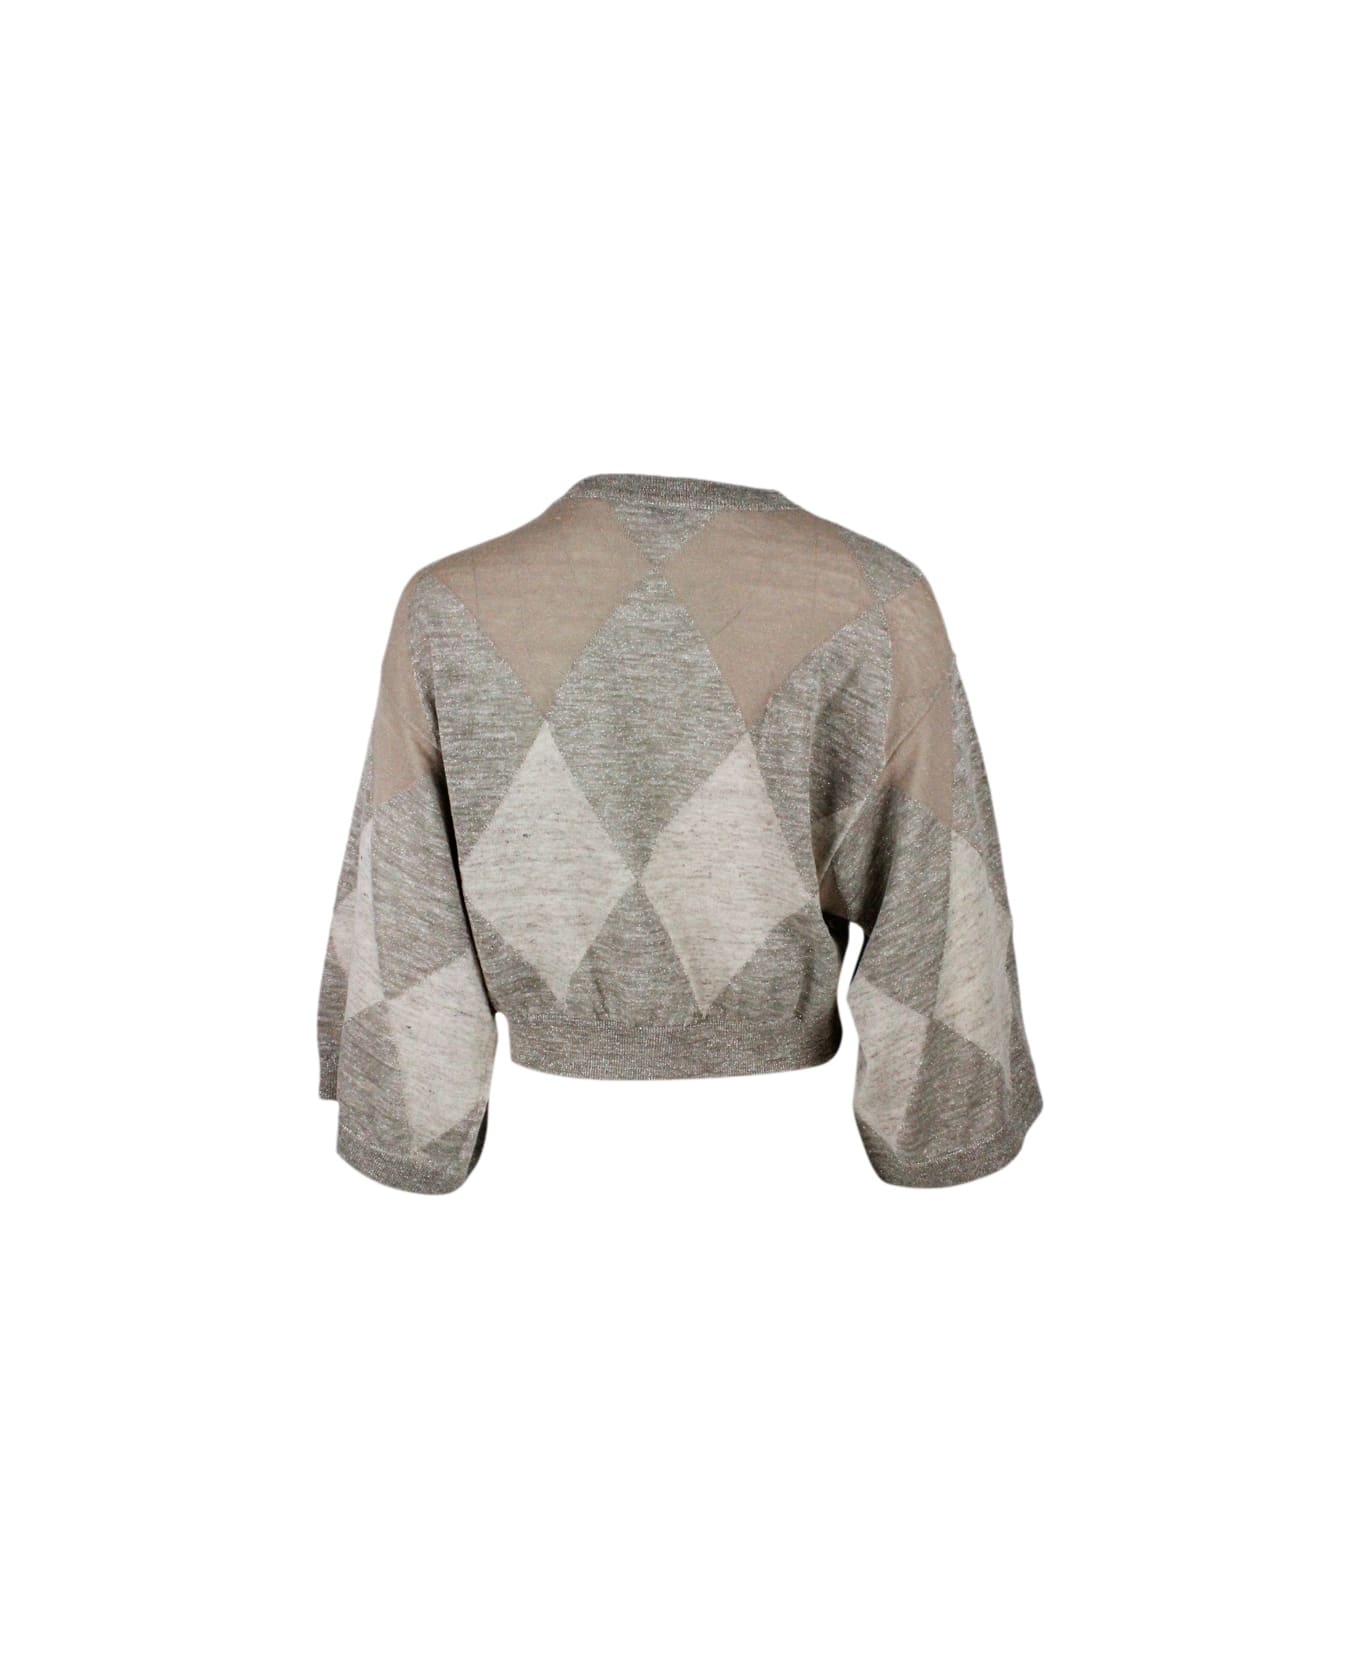 Brunello Cucinelli Round Neck Sweater With Diamond - Beige